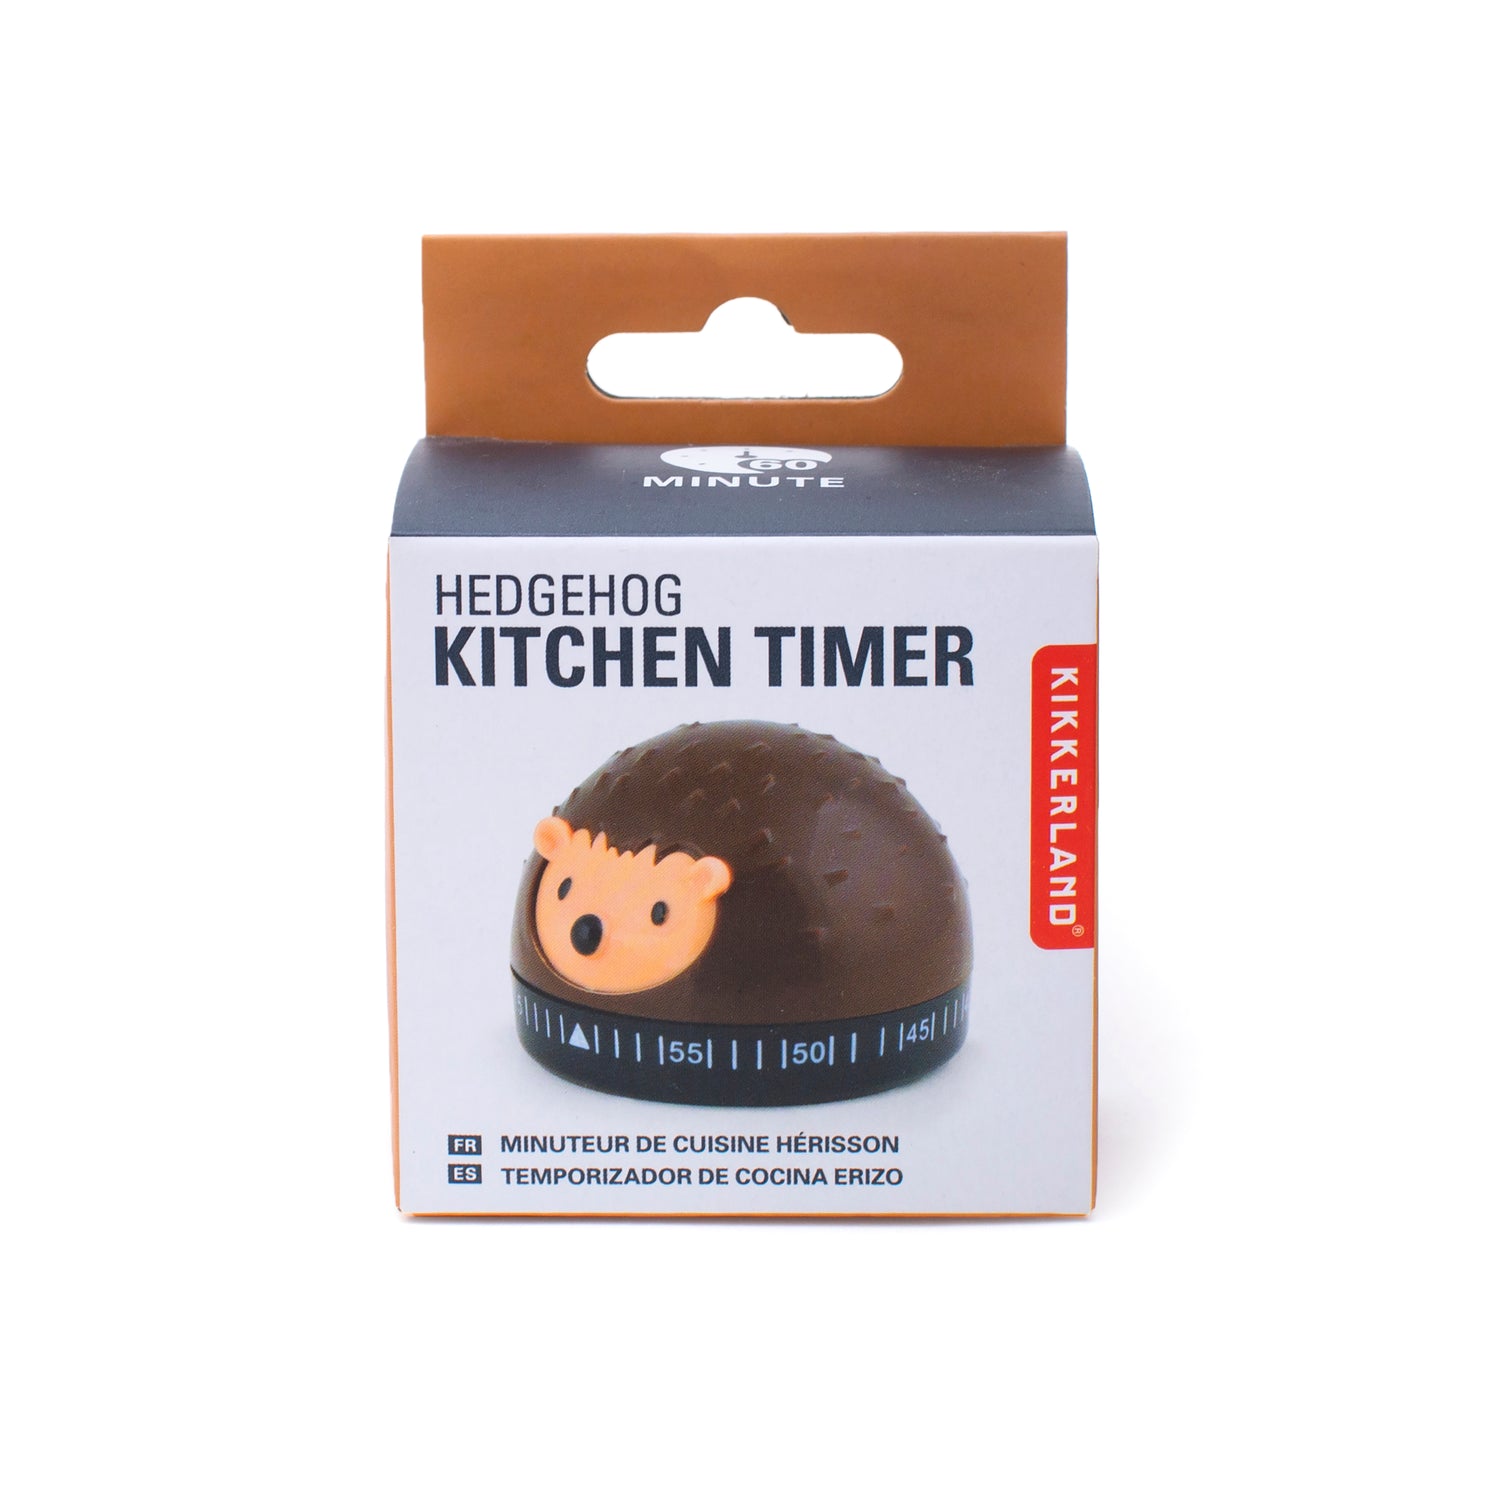 Hedgehog Kitchen Timer